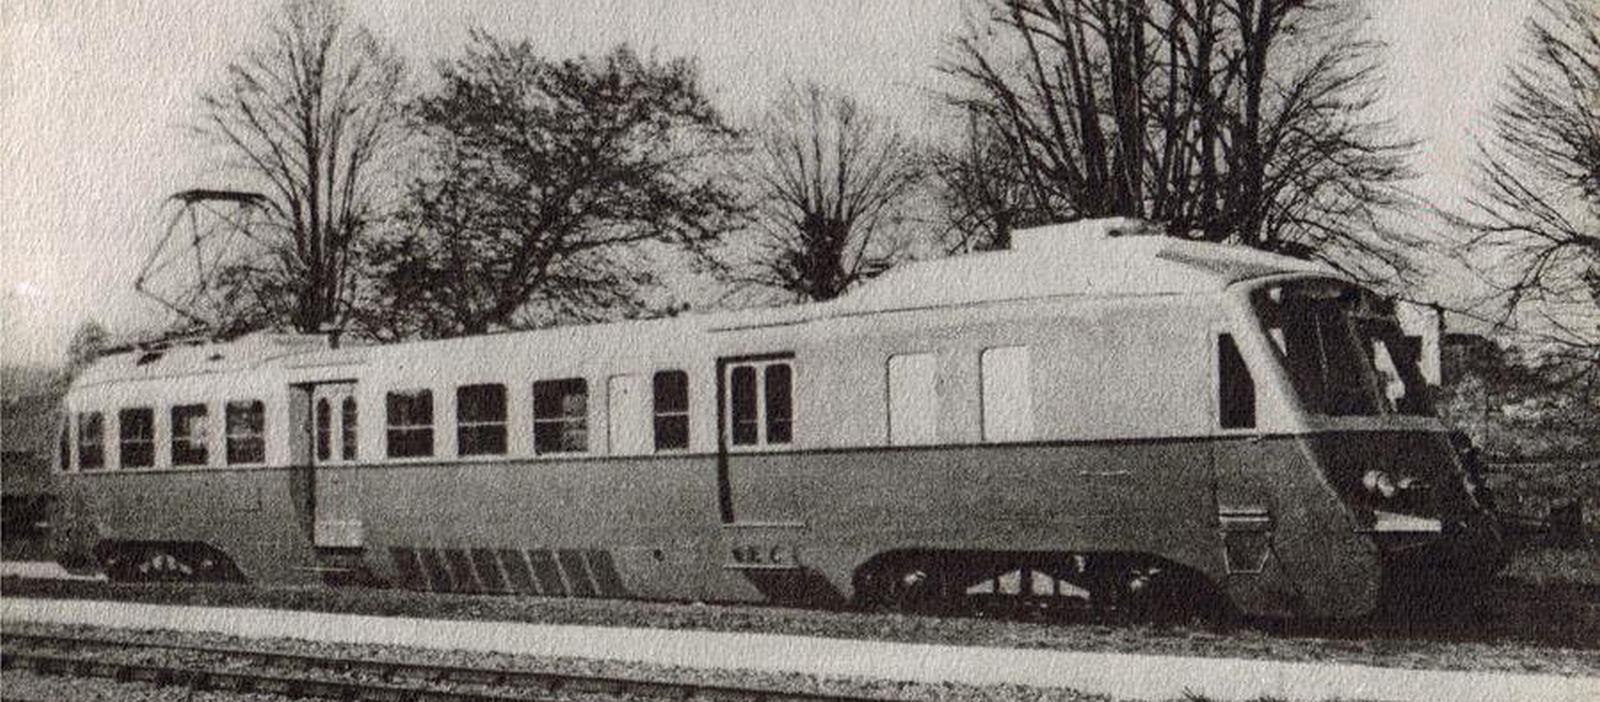 Railcar on an old postcard